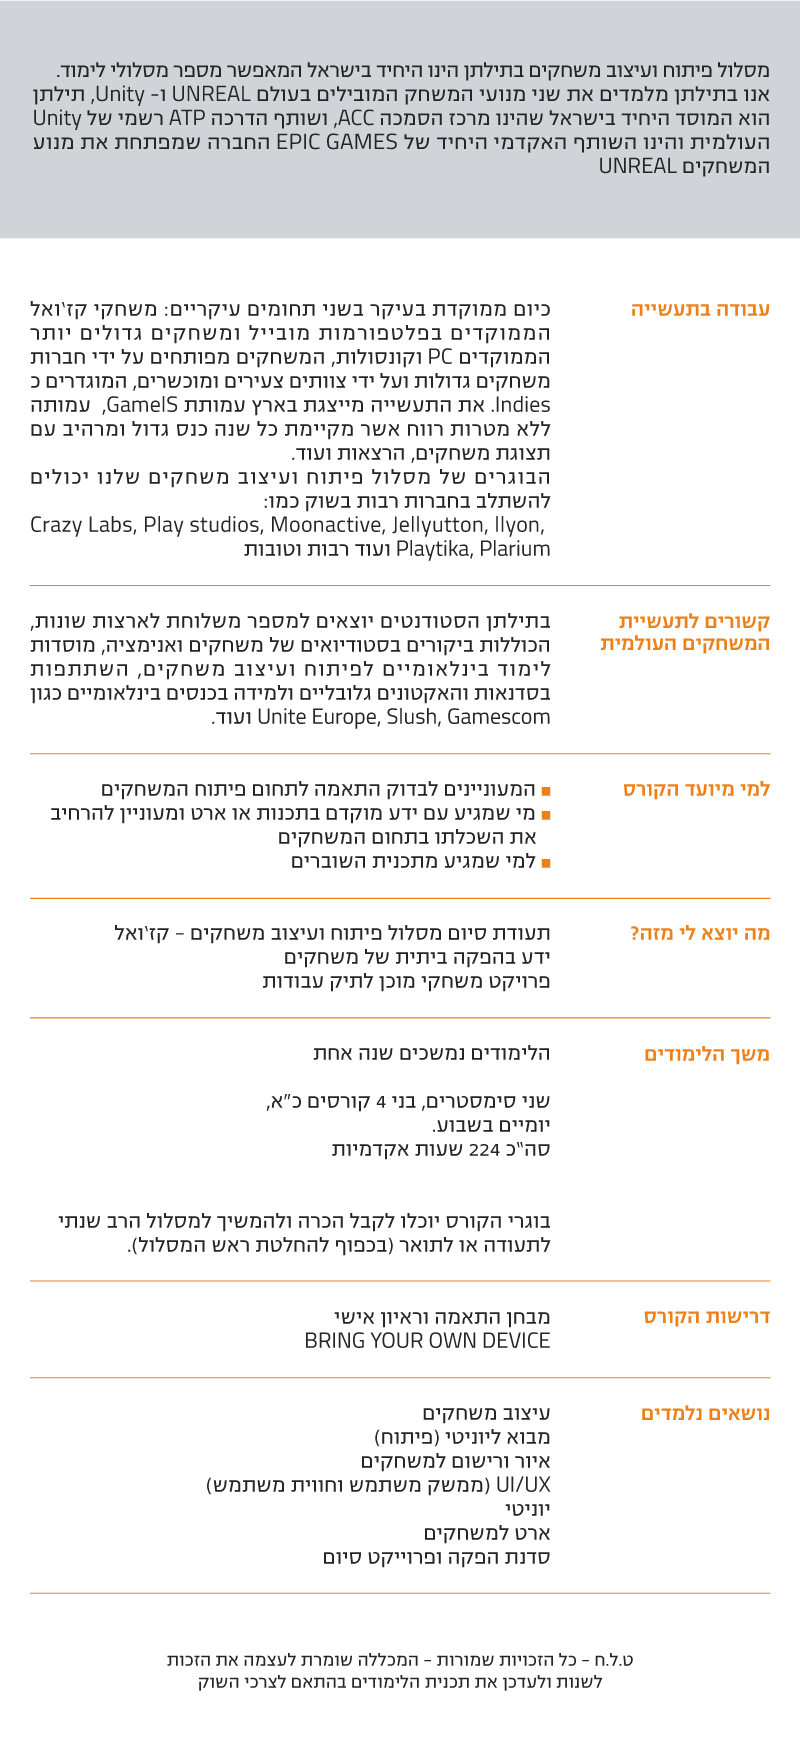 מסלול פיתוח ועיצוב משחקים - קז’ואל מסלול פיתוח ועיצוב משחקים בתילתן הינו היחיד בישראל המאפשר מספר מסלולי לימוד. אנו בתילתן מלמדים את שני מנועי המשחק המובילים בעולם UNREAL ו- Unity, תילתן הוא המוסד היחיד בישראל שהינו מרכז הסמכה ACC, ושותף הדרכה ATP רשמי של Unity העולמית והינו השותף האקדמי היחיד של EPIC GAMES החברה שמפתחת את מנוע המשחקים UNREAL עבודה בתעשיה כיום ממוקדת בעיקר בשני תחומים עיקריים: משחקי קז’ואל הממוקדים בפלטפורמות מובייל ומשחקים גדולים יותר הממוקדים PC וקונסולות, המשחקים מפותחים על ידי חברות משחקים גדולות ועל ידי צוותים צעירים ומוכשרים, המוגדרים כ Indies. את התעשייה מייצגת בארץ עמותת GamelS, עמותה ללא מטרות רווח אשר מקיימת כל שנה כנס גדול ומרהיב עם תצוגת משחקים, הרצאות ועוד. הבוגרים של מסלול פיתוח ועיצוב משחקים שלנו יכולים להשתלב בחברות רבות בשוק כמו: Crazy Labs, Play studios, Moonactive, Jellyutton, llyon, Playtika, Plarium ועוד רבות וטובות קשורים לתעשיית המשחקים העולמית בתילתן הסטודנטים יוצאים למספר משלוחת לארצות שונות, הכוללות ביקורים בסטודיואים של משחקים ואנימציה, מוסדות לימוד בינלאומיים לפיתוח ועיצוב משחקים, השתתפות בסדנאות והאקטונים גלובליים ולמידה בכנסים בינלאומיים כגון Unite Europe, Slush, Gamescom ועוד. למי מיועד הקורס ˆ המעוניינים לבדוק התאמה לתחום פיתוח המשחקים ˆ מי שמגיע עם ידע מוקדם בתכנות או ארט ומעוניין להרחיב את השכלתו בתחום המשחקים ˆ למי שמגיע מתכנית השוברים מה יוצא לי מזה? תעודת סיום מסלול פיתוח ועיצוב משחקים - קז’ואל ידע בהפקה ביתית של משחקים פרויקט משחקי מוכן לתיק עבודות משך הלימודים הלימודים נמשכים שנה אחת שני סימסטרים, בני 4 קורסים כ"א, יומיים בשבוע. סה”כ 224 שעות אקדמיות בוגרי הקורס יוכלו לקבל הכרה ולהמשיך למסלול הרב שנתי לתעודה או לתואר (בכפוף להחלטת ראש המסלול). דרישות הקורס מבחן התאמה וראיון אישי BRING YOUR OWN DEVICE נושאים נלמדים עיצוב משחקים מבוא ליוניטי (פיתוח) איור ורישום למשחקים UI/UX (ממשק משתמש וחווית משתמש) יוניטי ארט למשחקים סדנת הפקה ופרוייקט סיום ט.ל.ח - כל הזכויות שמורות - המכללה שומרת לעצמה את הזכות לשנות ולעדכן את תכנית הלימודים בהתאם לצרכי השוק